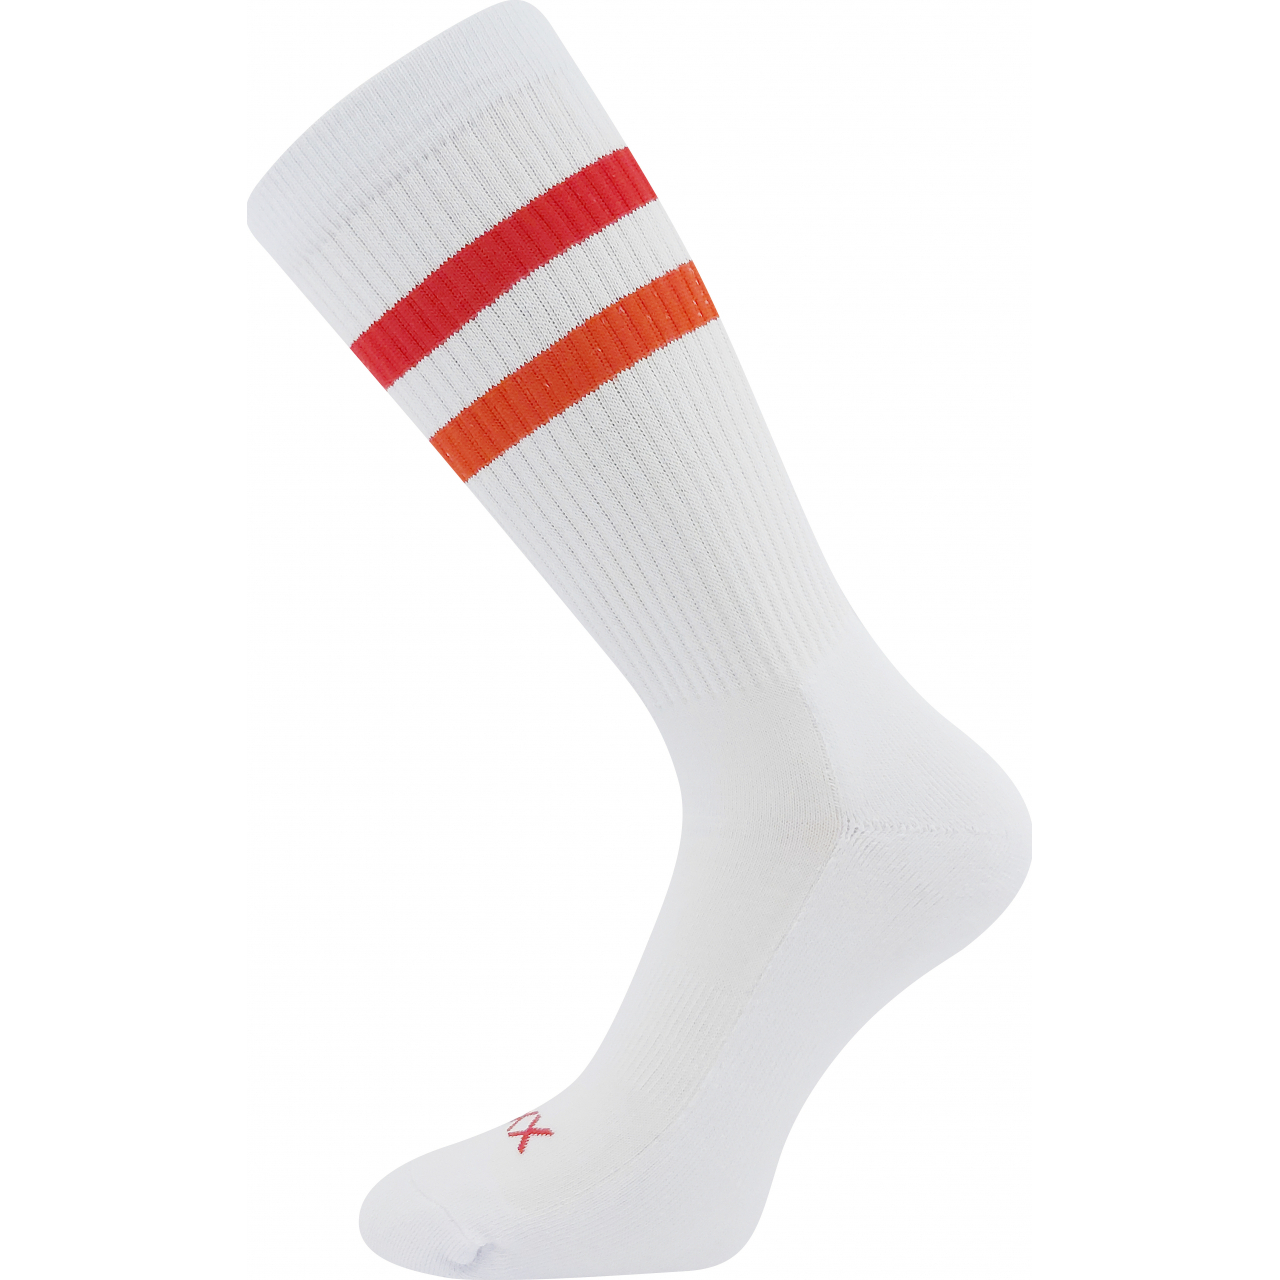 Ponožky pánské sportovní Voxx Retran - bílé-červené, 39-42